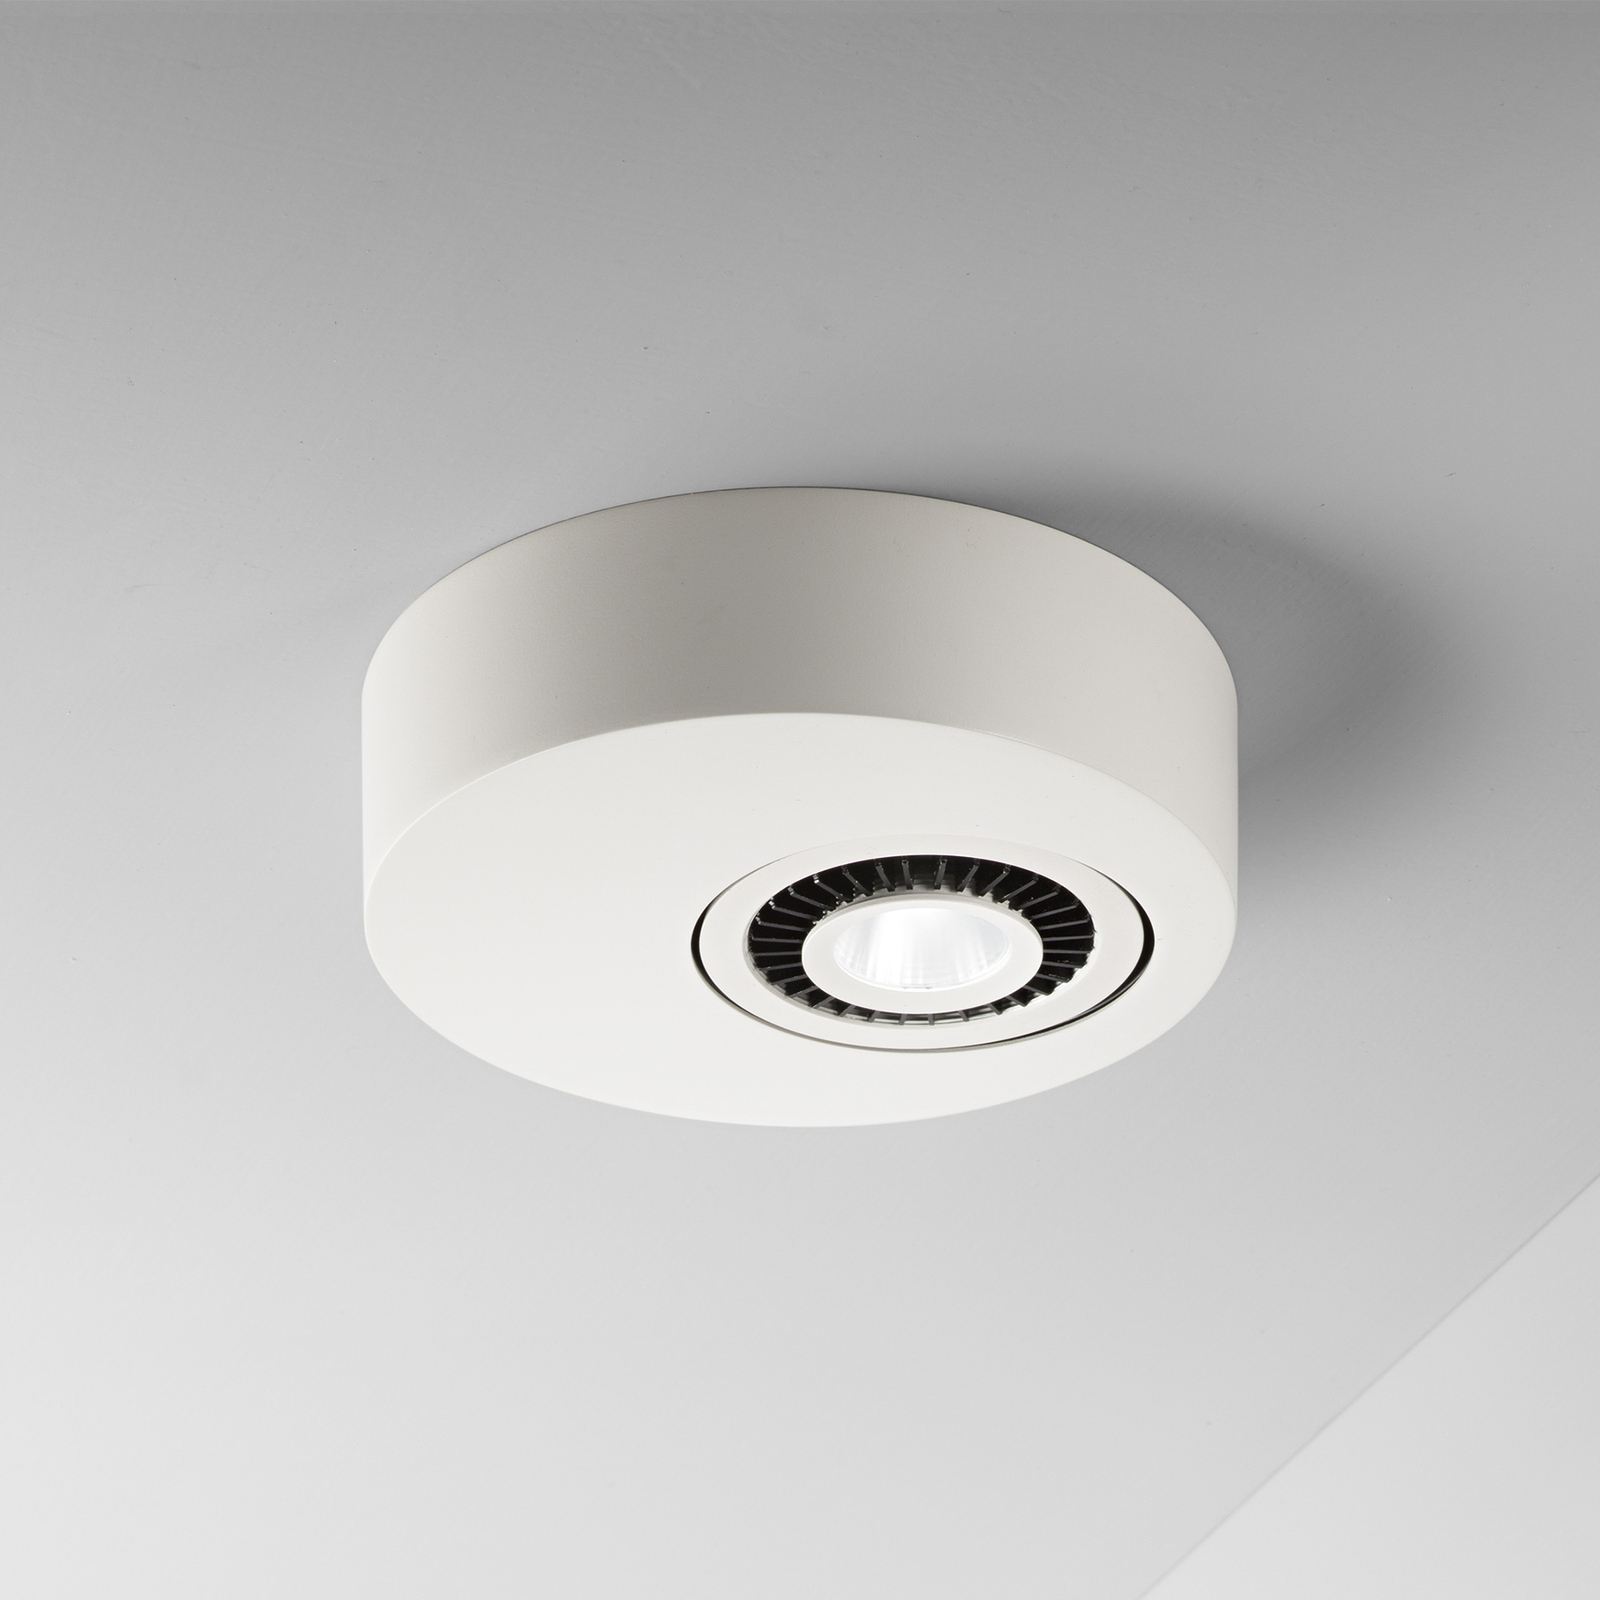 Egger Geo lampa sufitowa LED ze spotem LED, biała